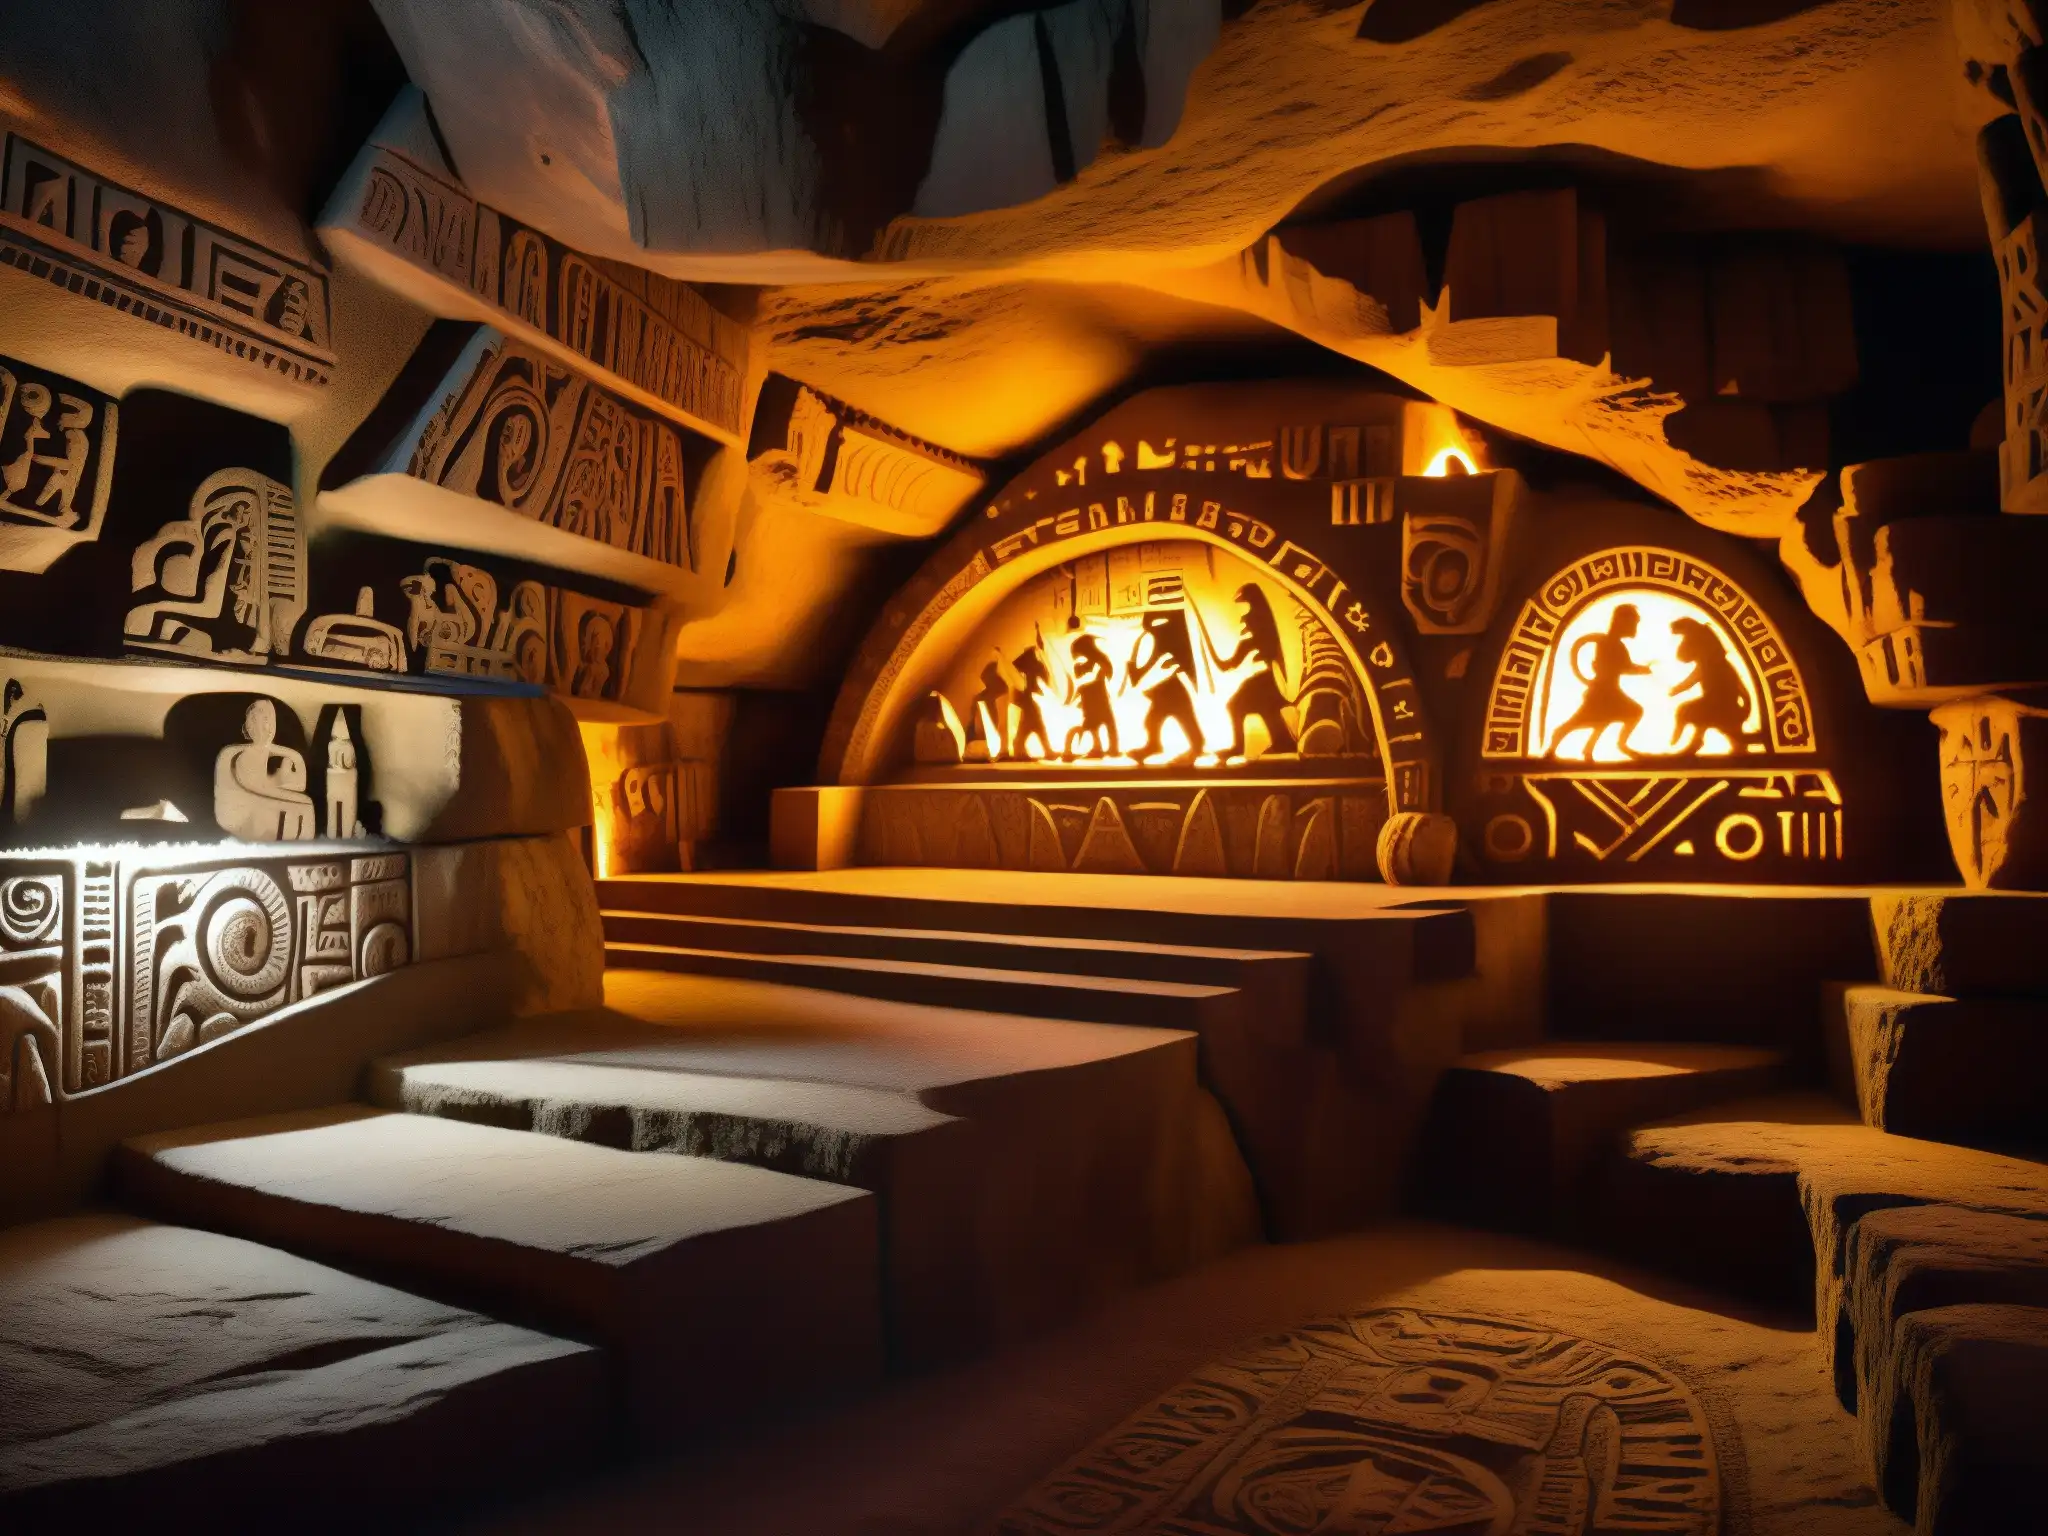 Explore las misteriosas cavernas del Mictlán, llenas de mitos y leyendas urbanas